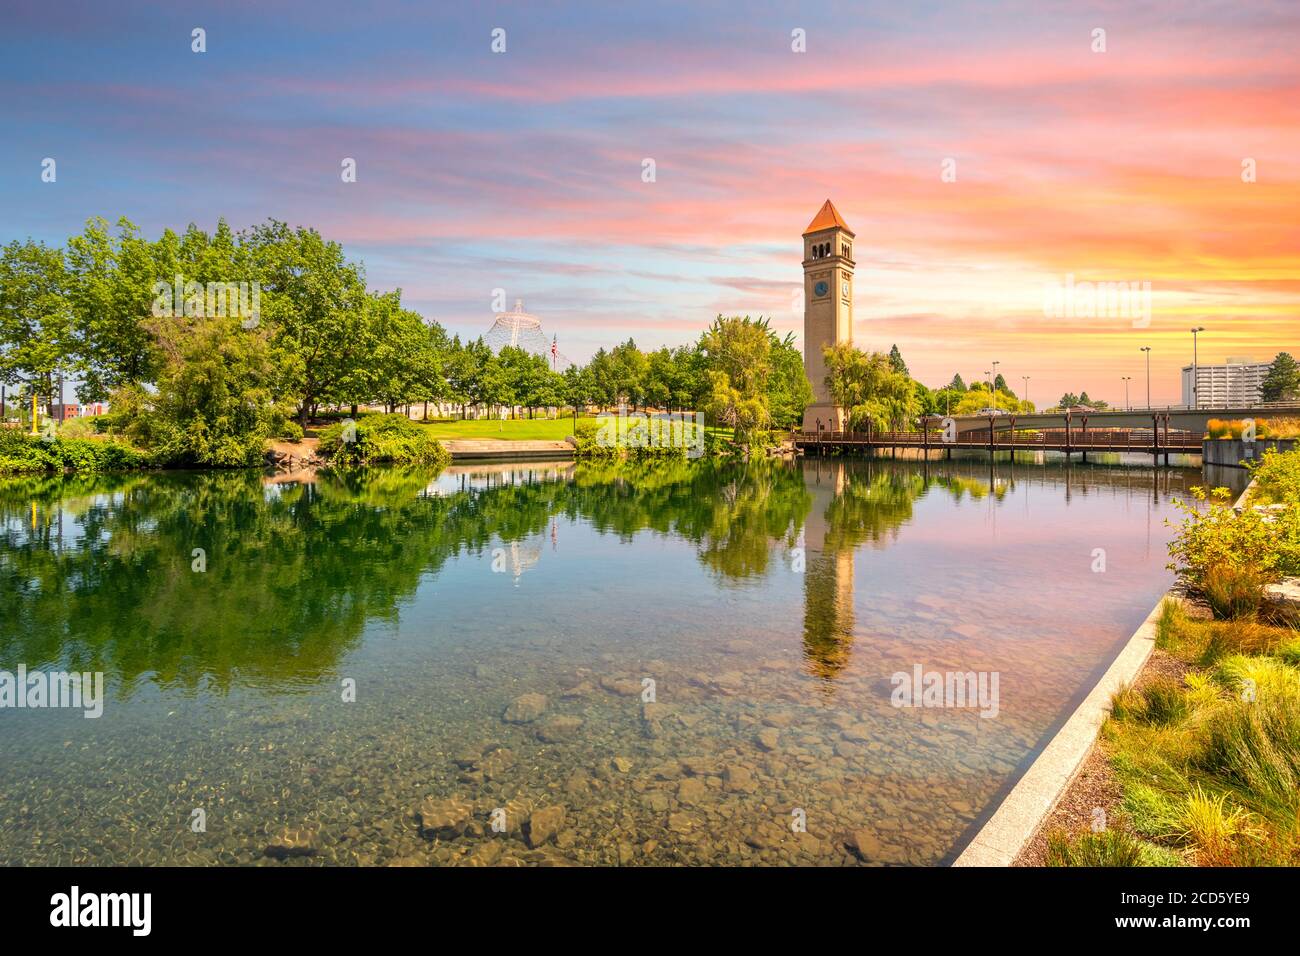 La torre del reloj de Spokane y el pabellón a lo largo del río en Riverfront Park, en el centro de Washington, bajo una colorida puesta de sol en Spokane, Washington, Estados Unidos Foto de stock